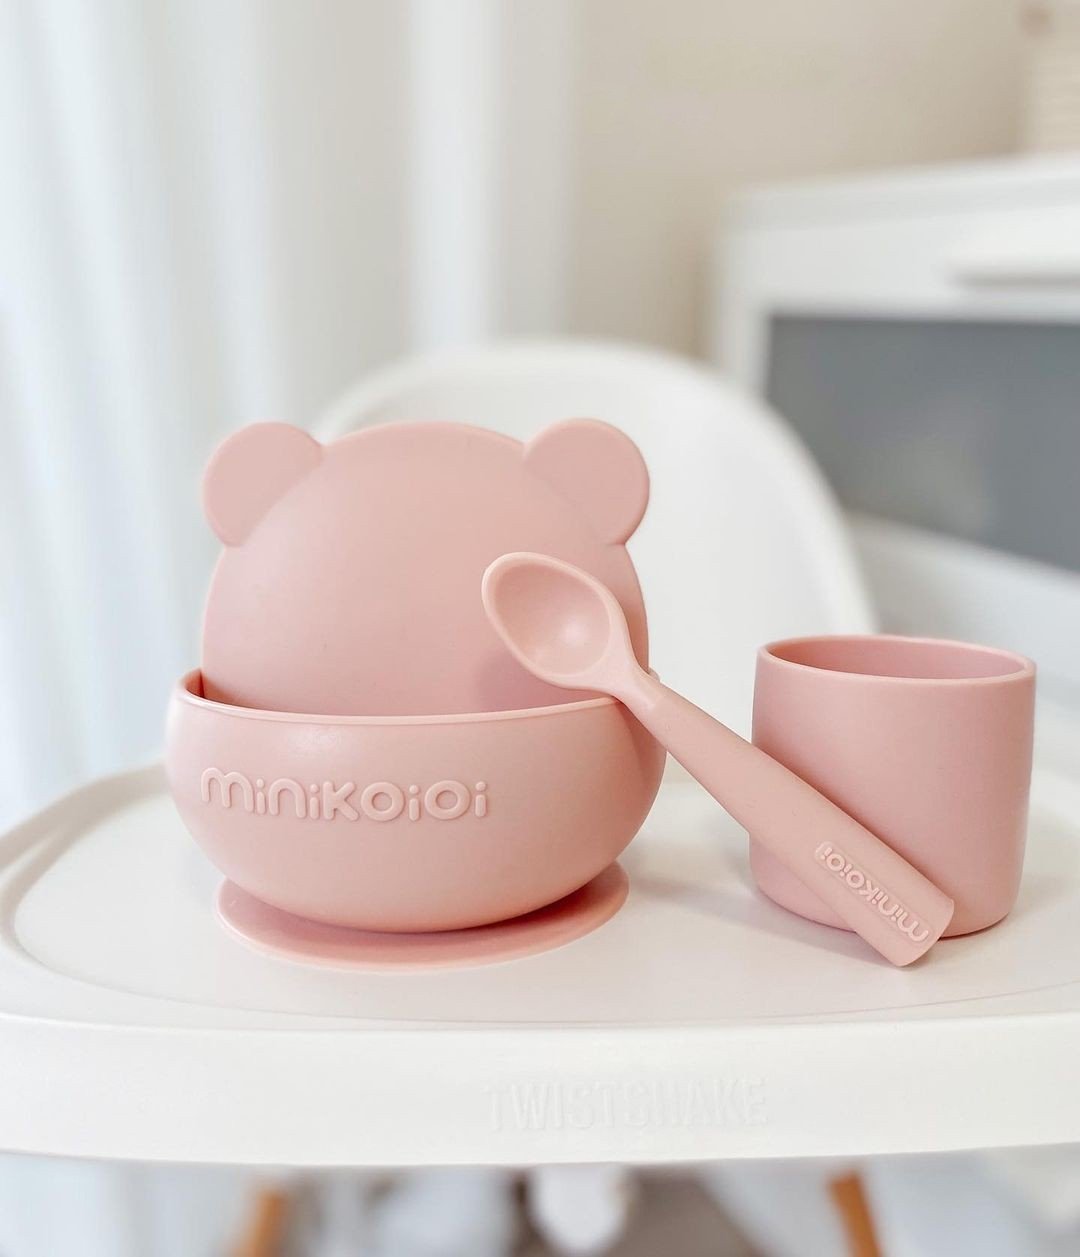 MinikOiOi Bộ ăn dặm số 1 cho bé chất liệu silicone cao cấp gồm chén, cốc và muỗng